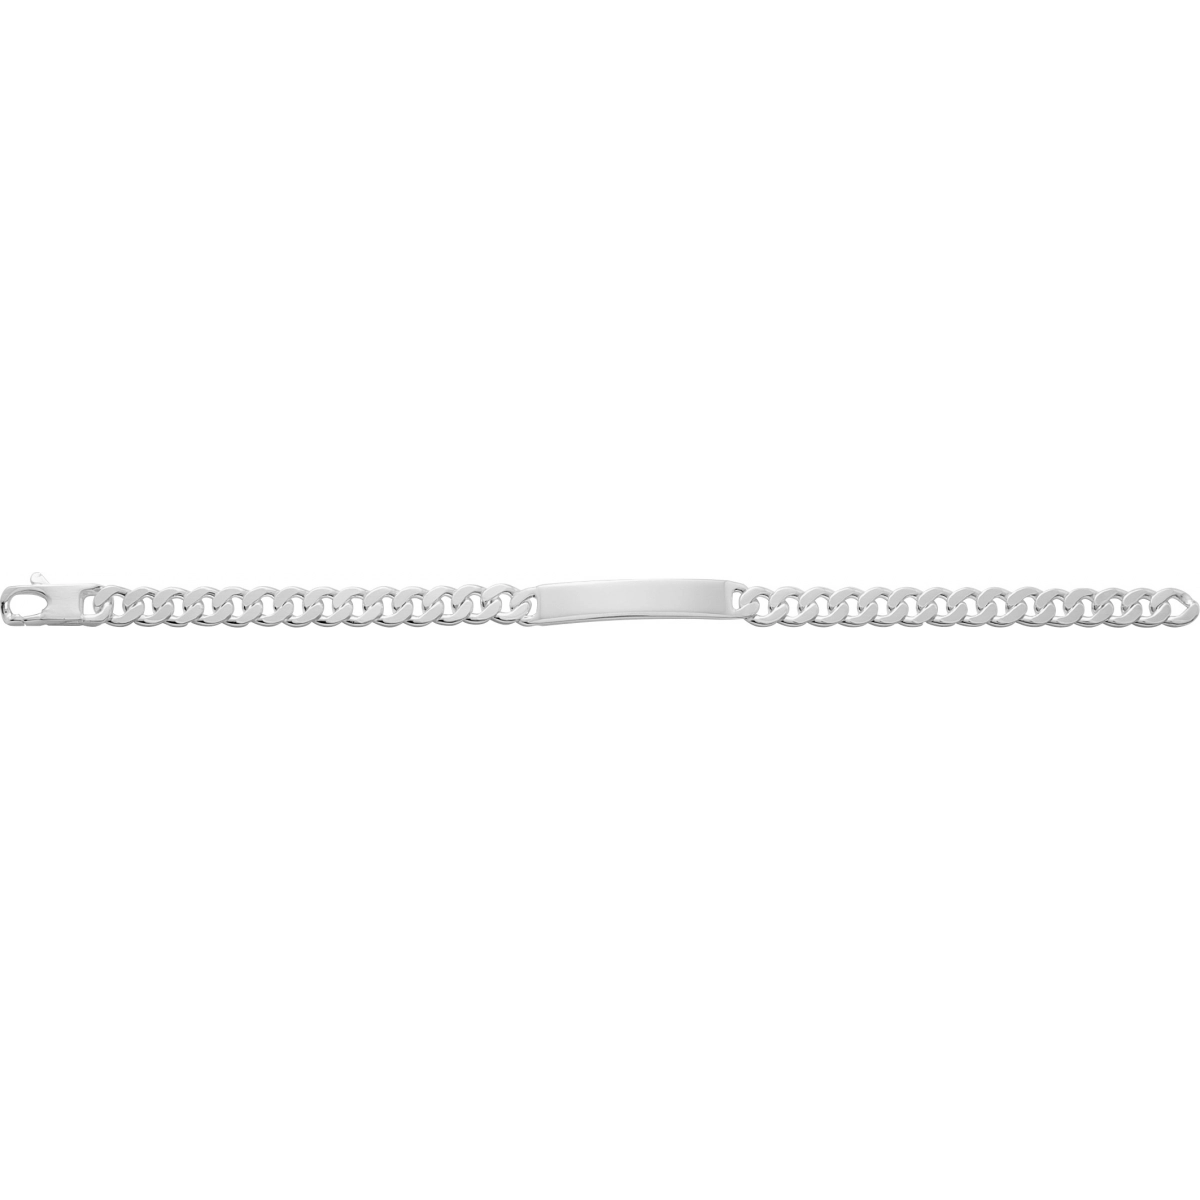 ID bracelet 6mm rh925 Silver - Size: 18  Lua Blanca  314006.00.18